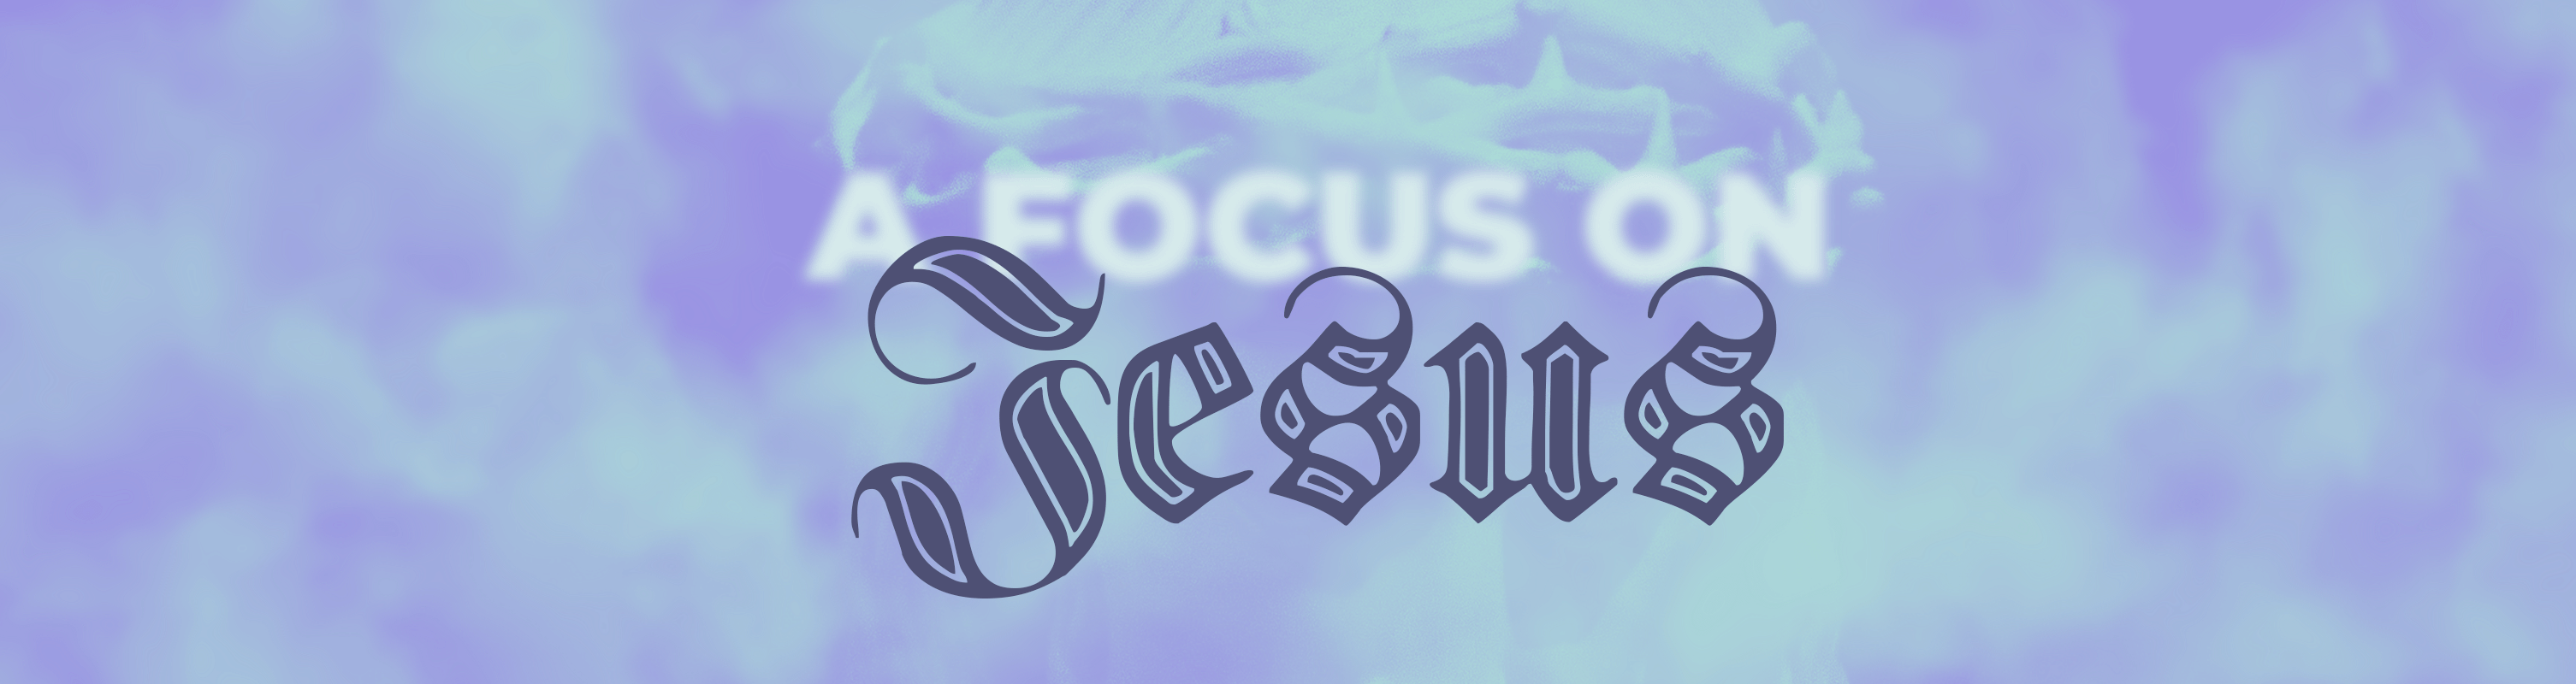 A-Focus-on-Jesus-Pro-website